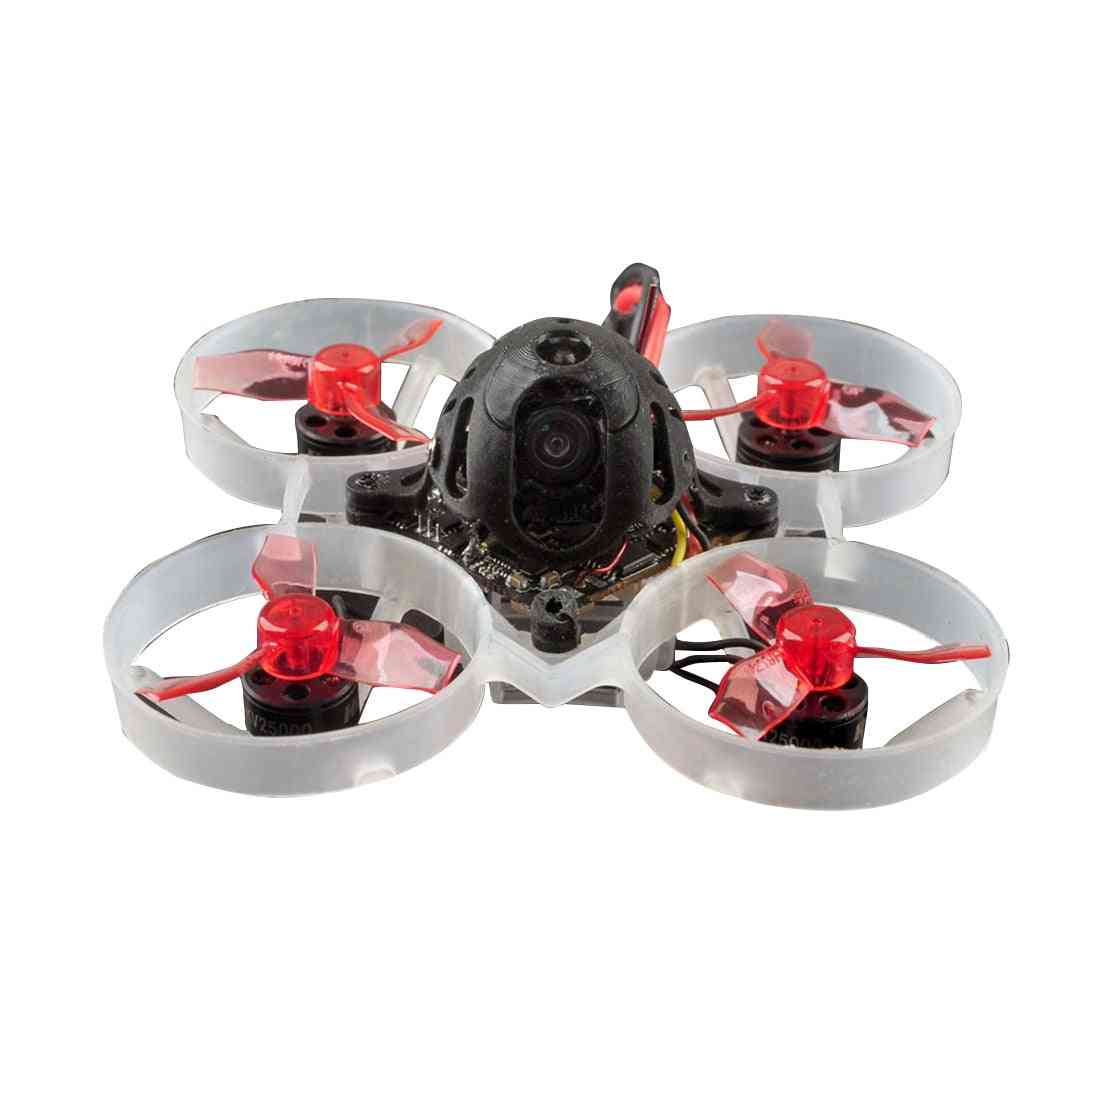 Drone de course avec 4 en 1 - facile à utiliser - 19000kv pour frsky